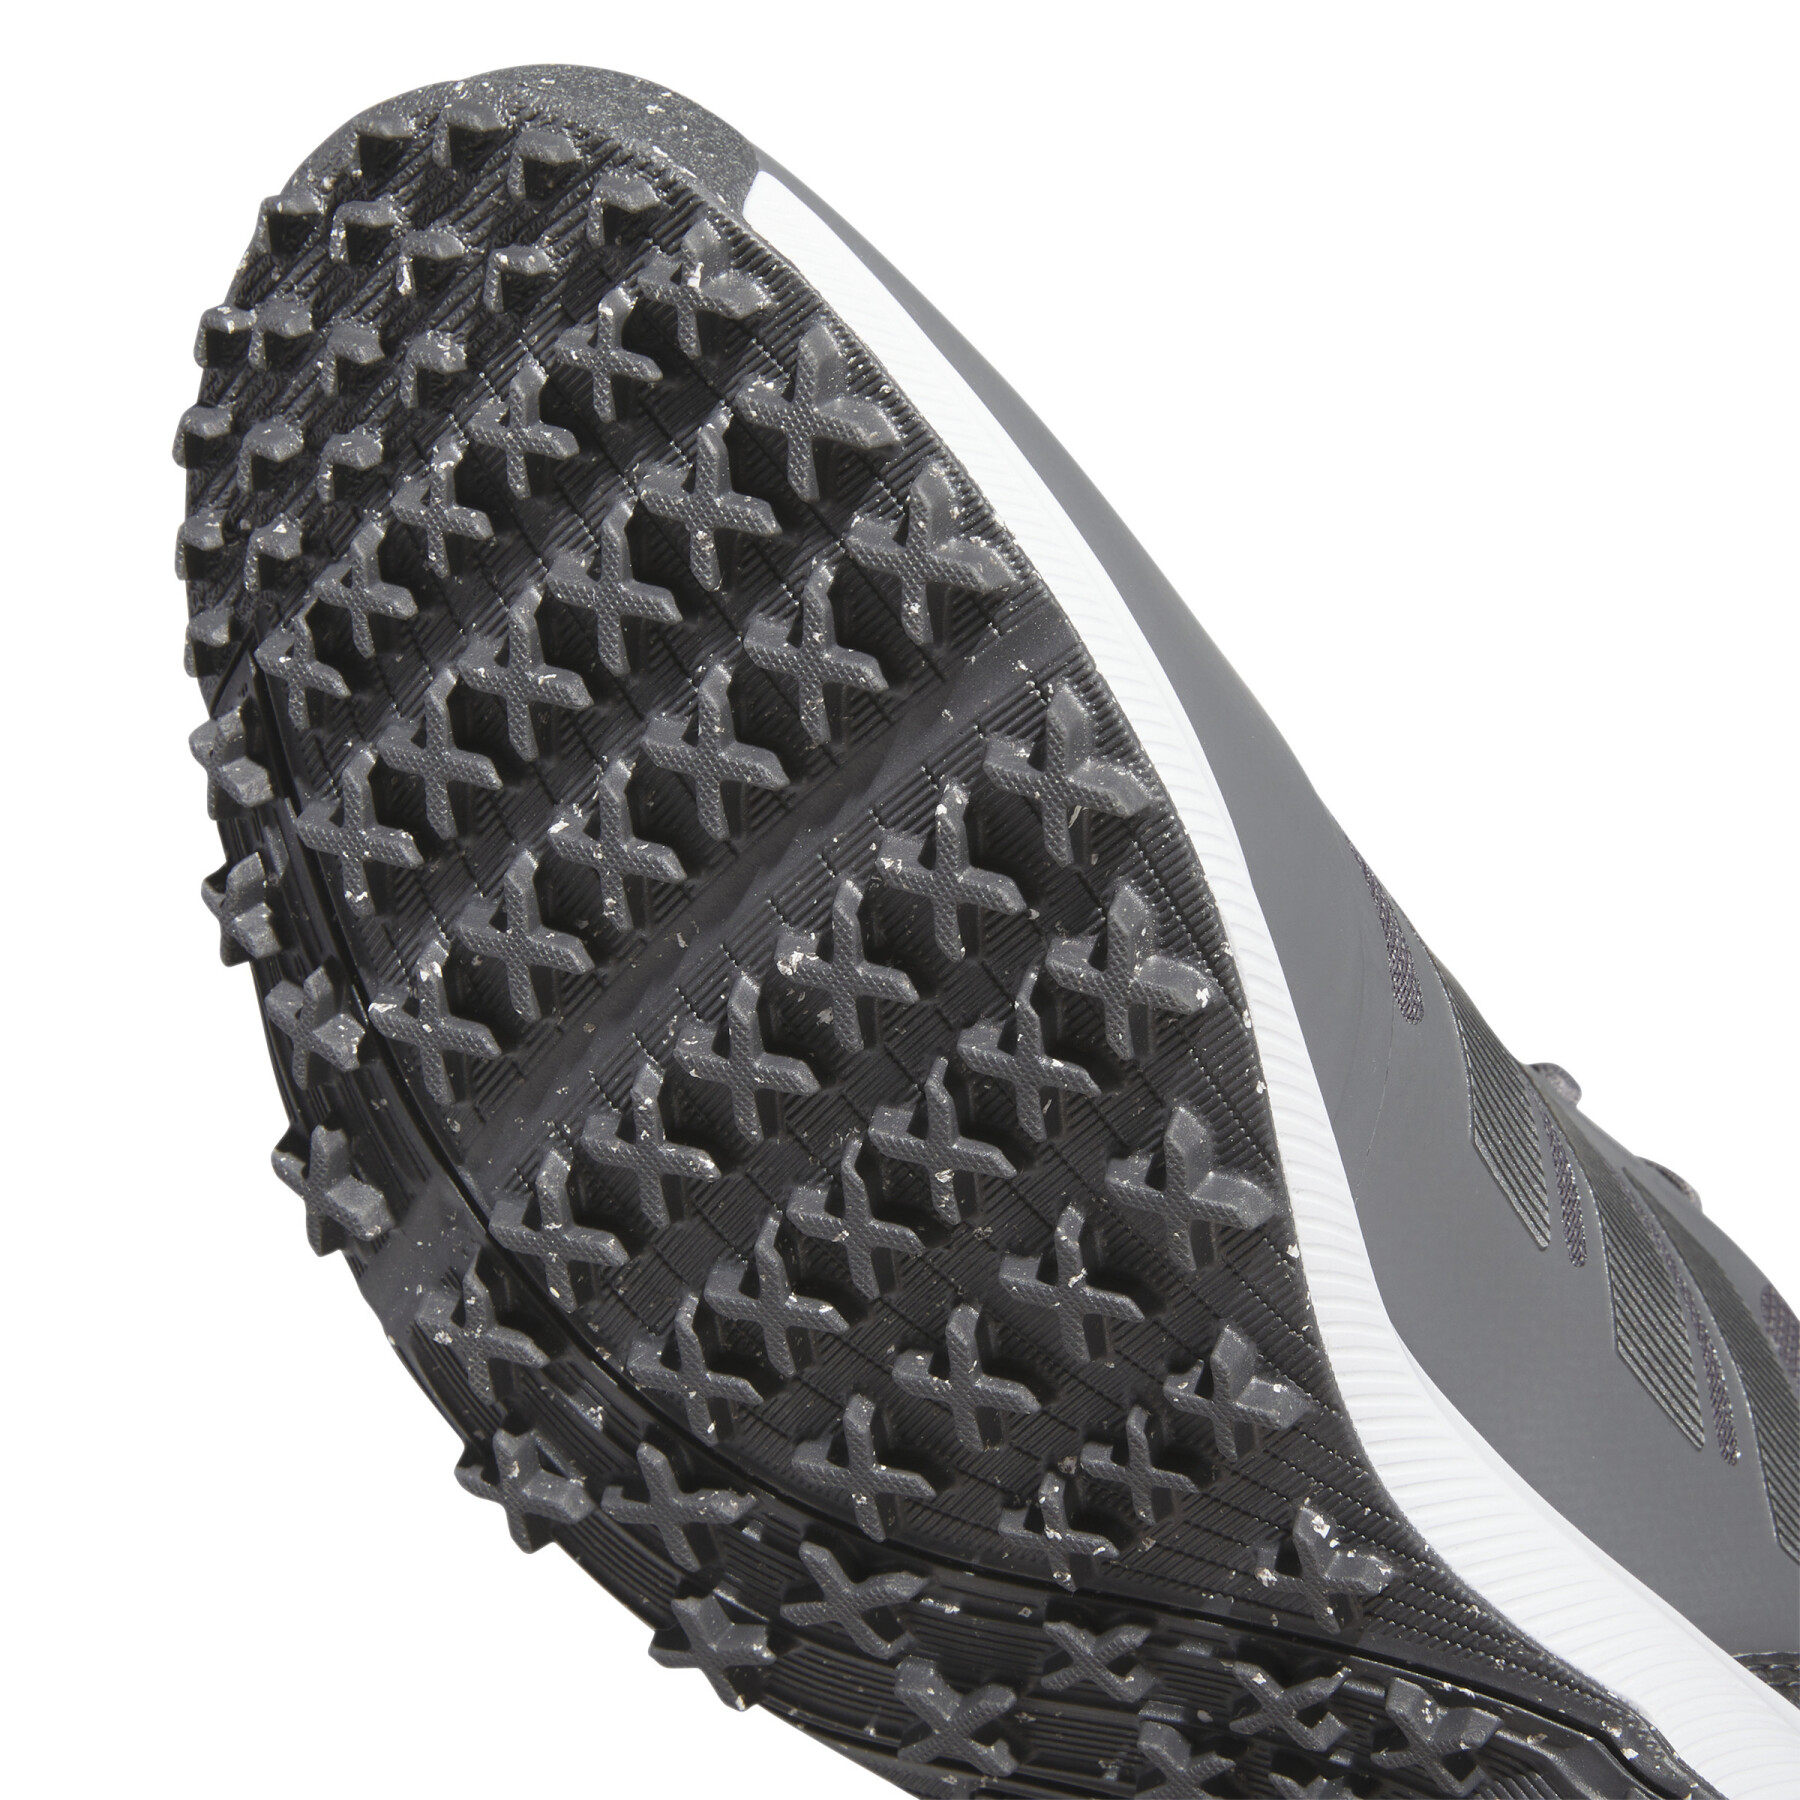 Chaussures de golf sans crampons adidas Tech Response SL 3.0 Wide